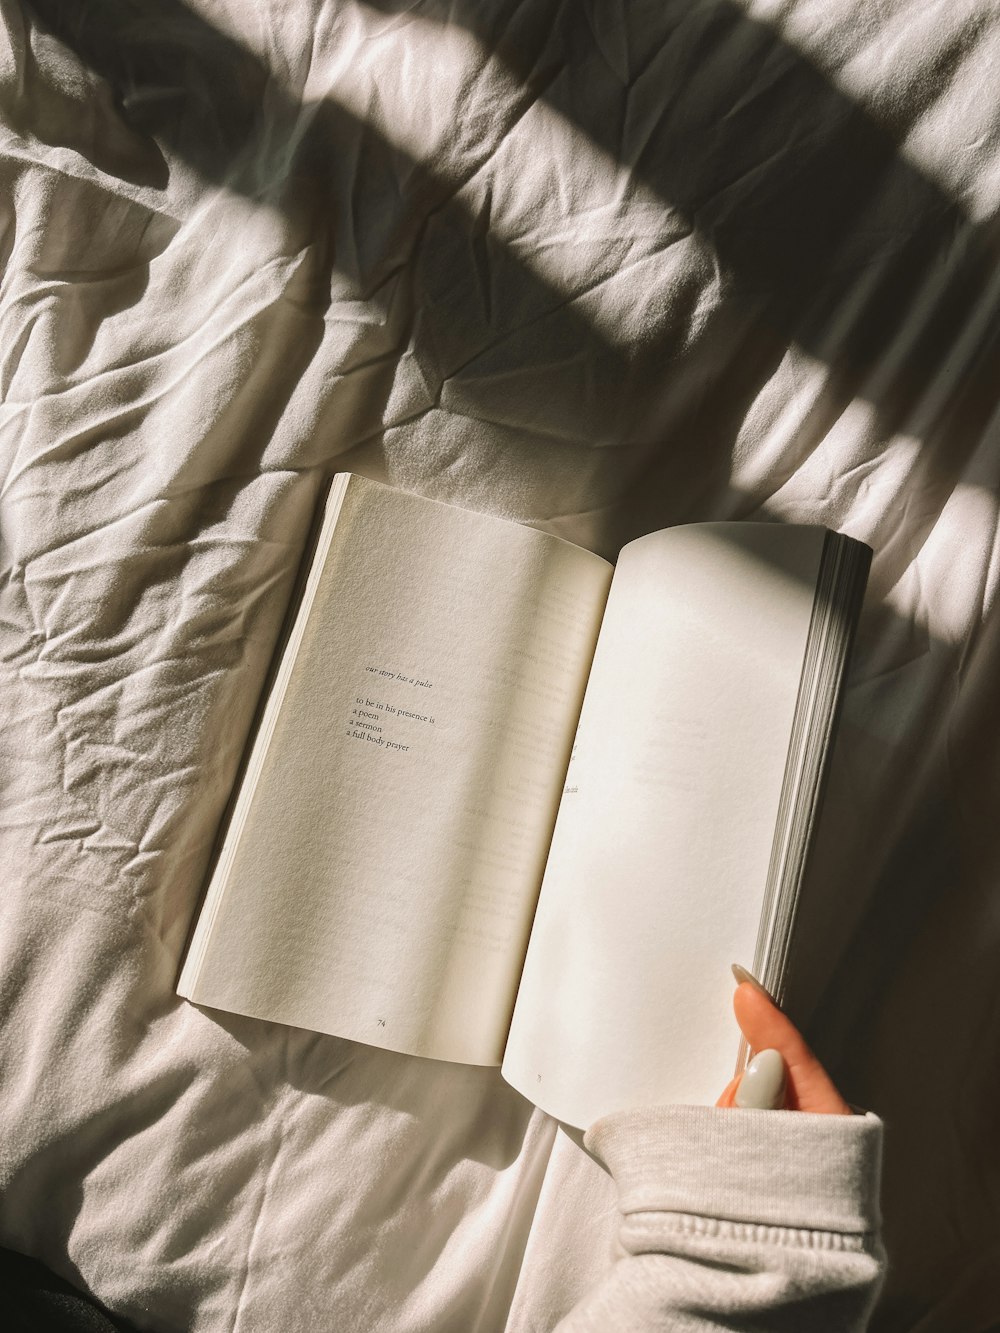 Eine Person liest ein Buch auf einem Bett